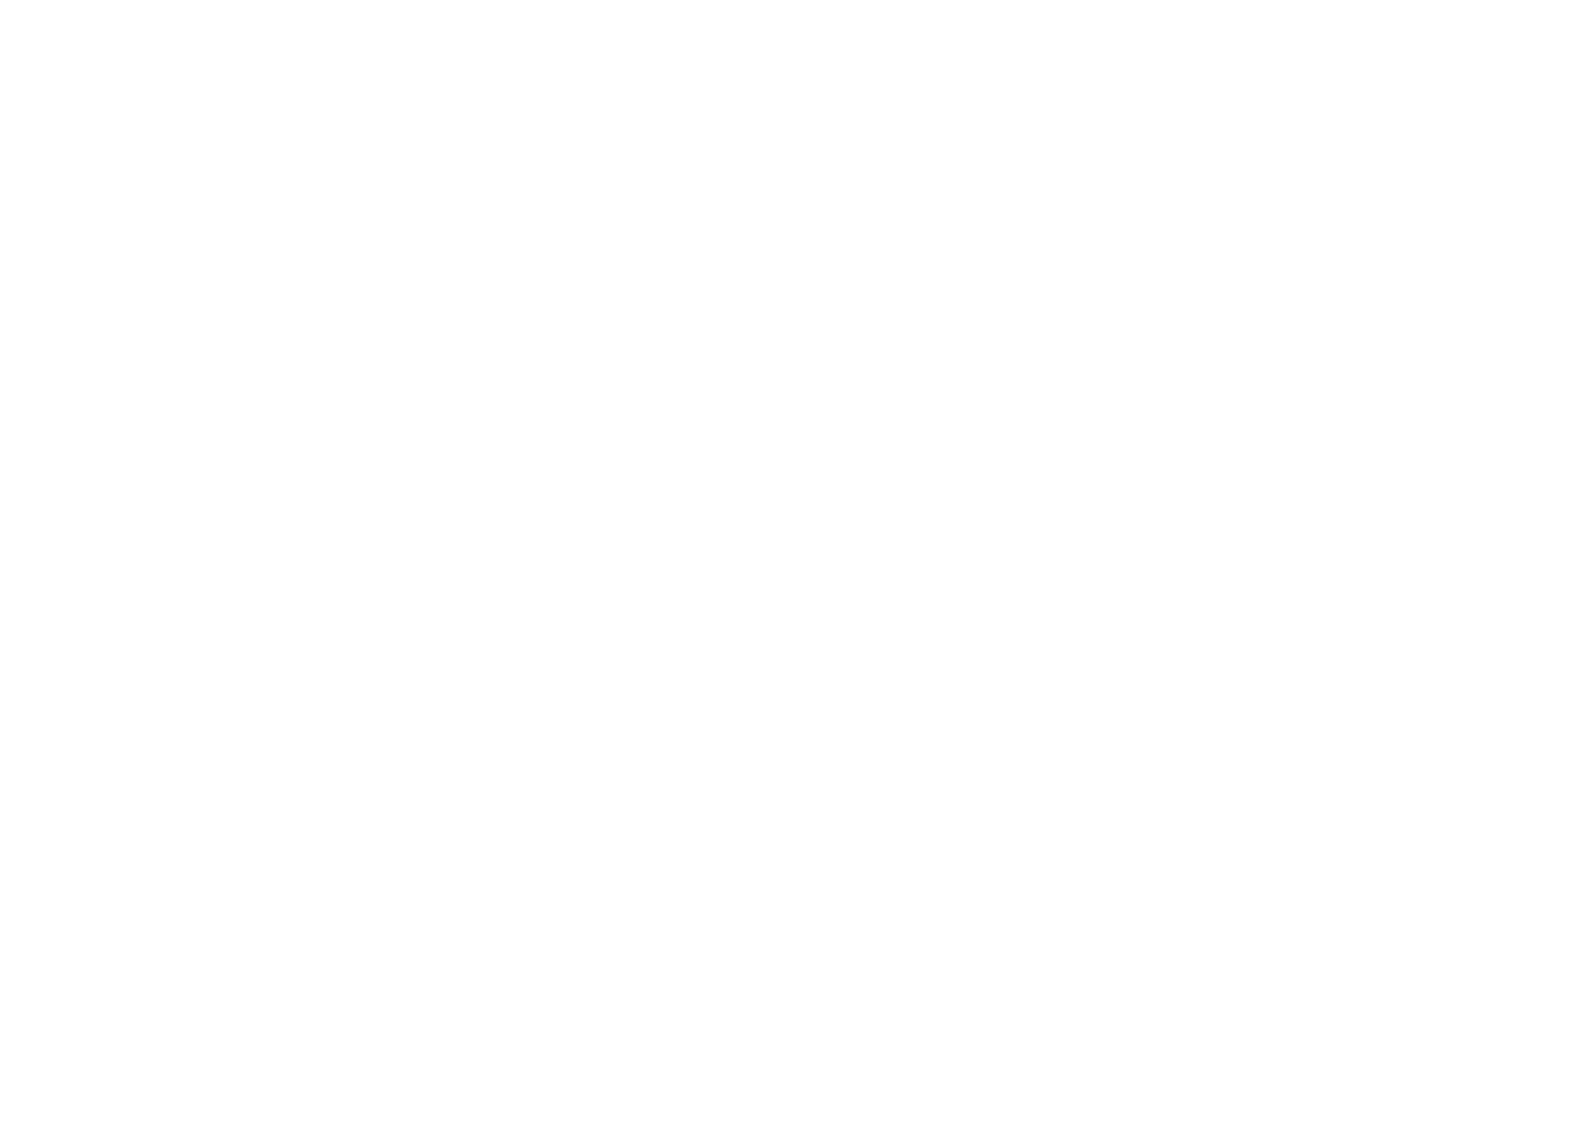 Seatrium logo pour fonds sombres (PNG transparent)